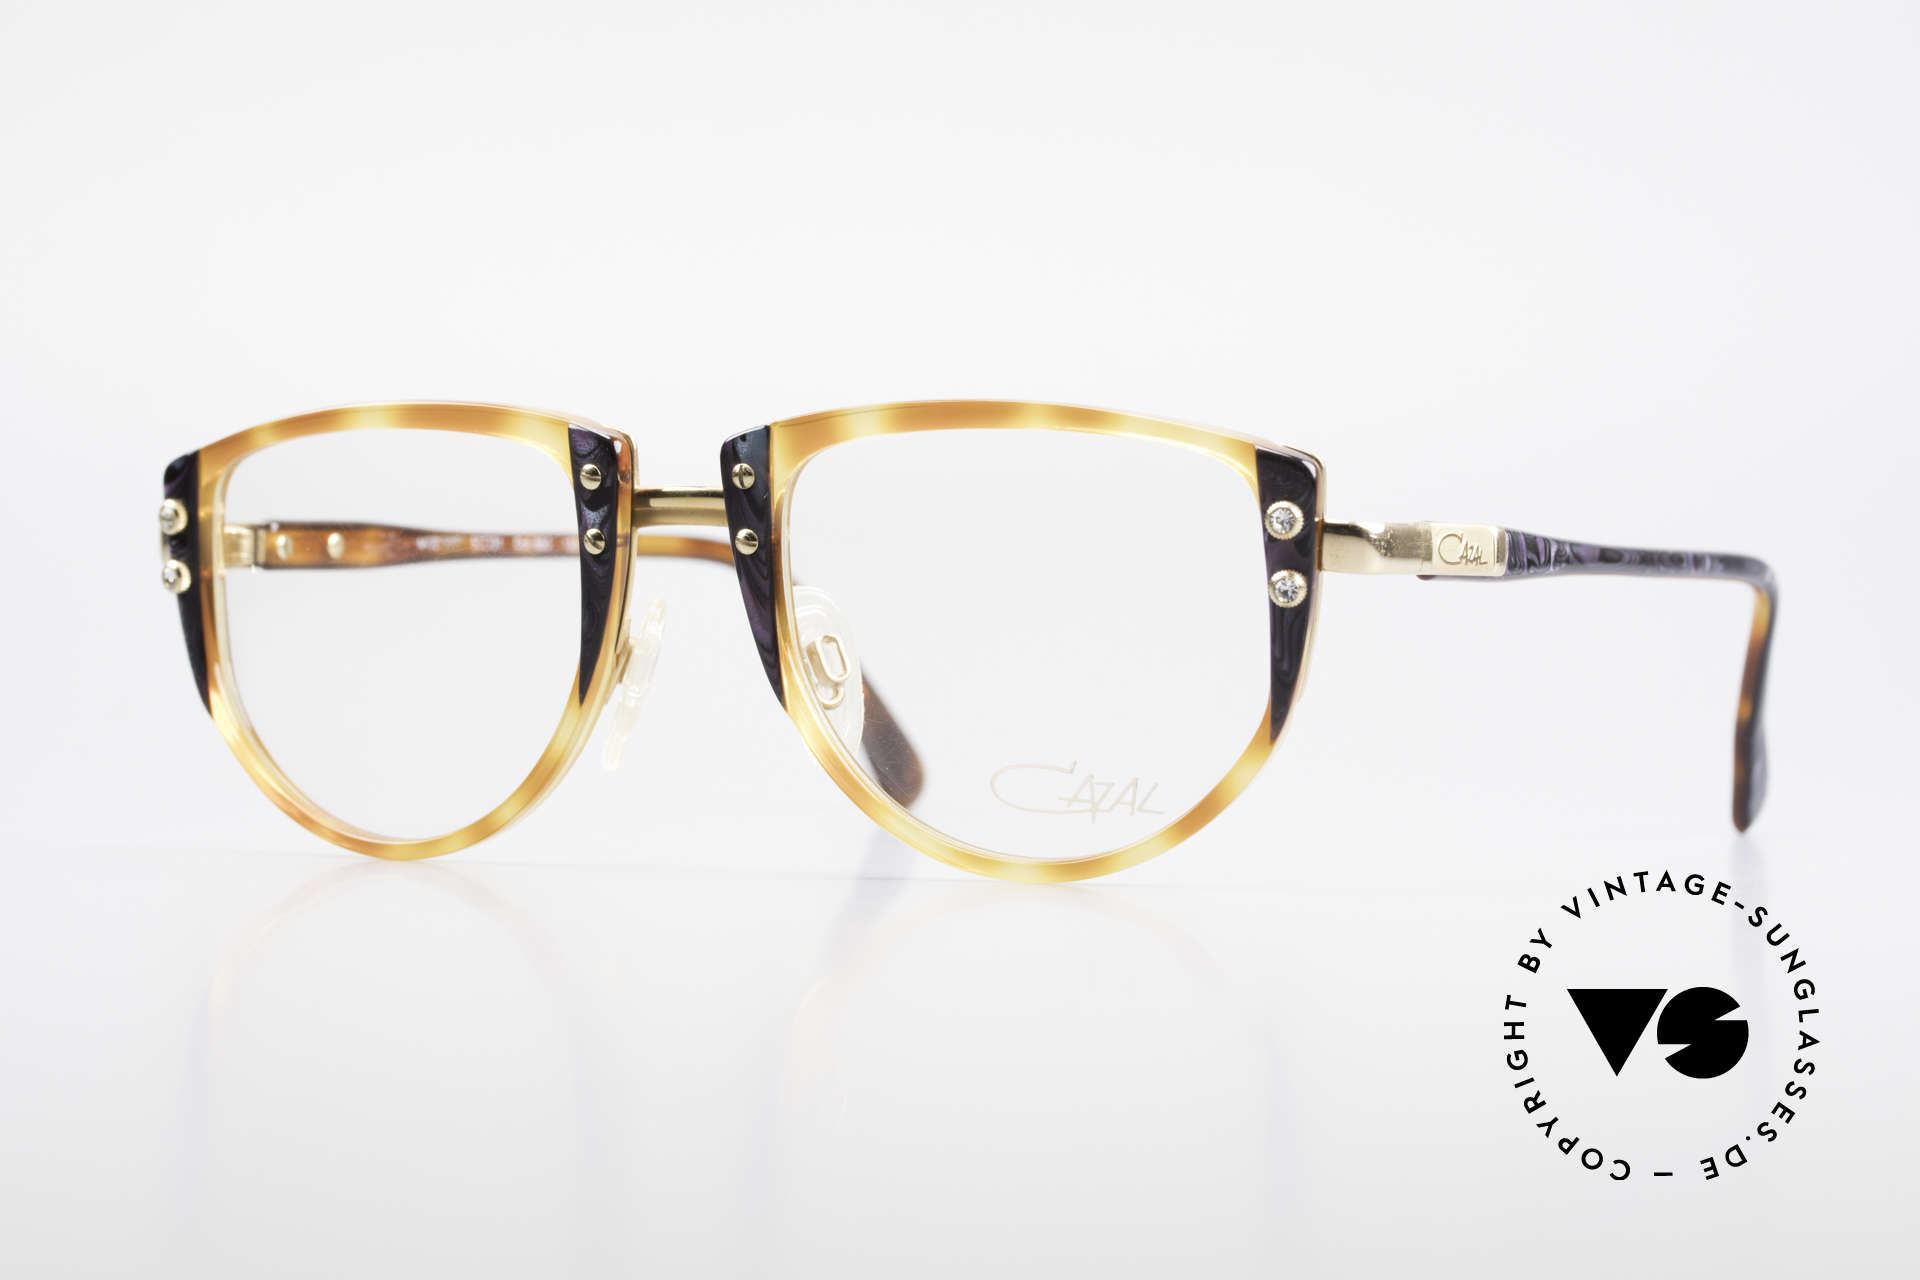 Cazal 332 Original 90's Cazal Glasses, charming Cazal vintage designer eyeglass-frame, Made for Women